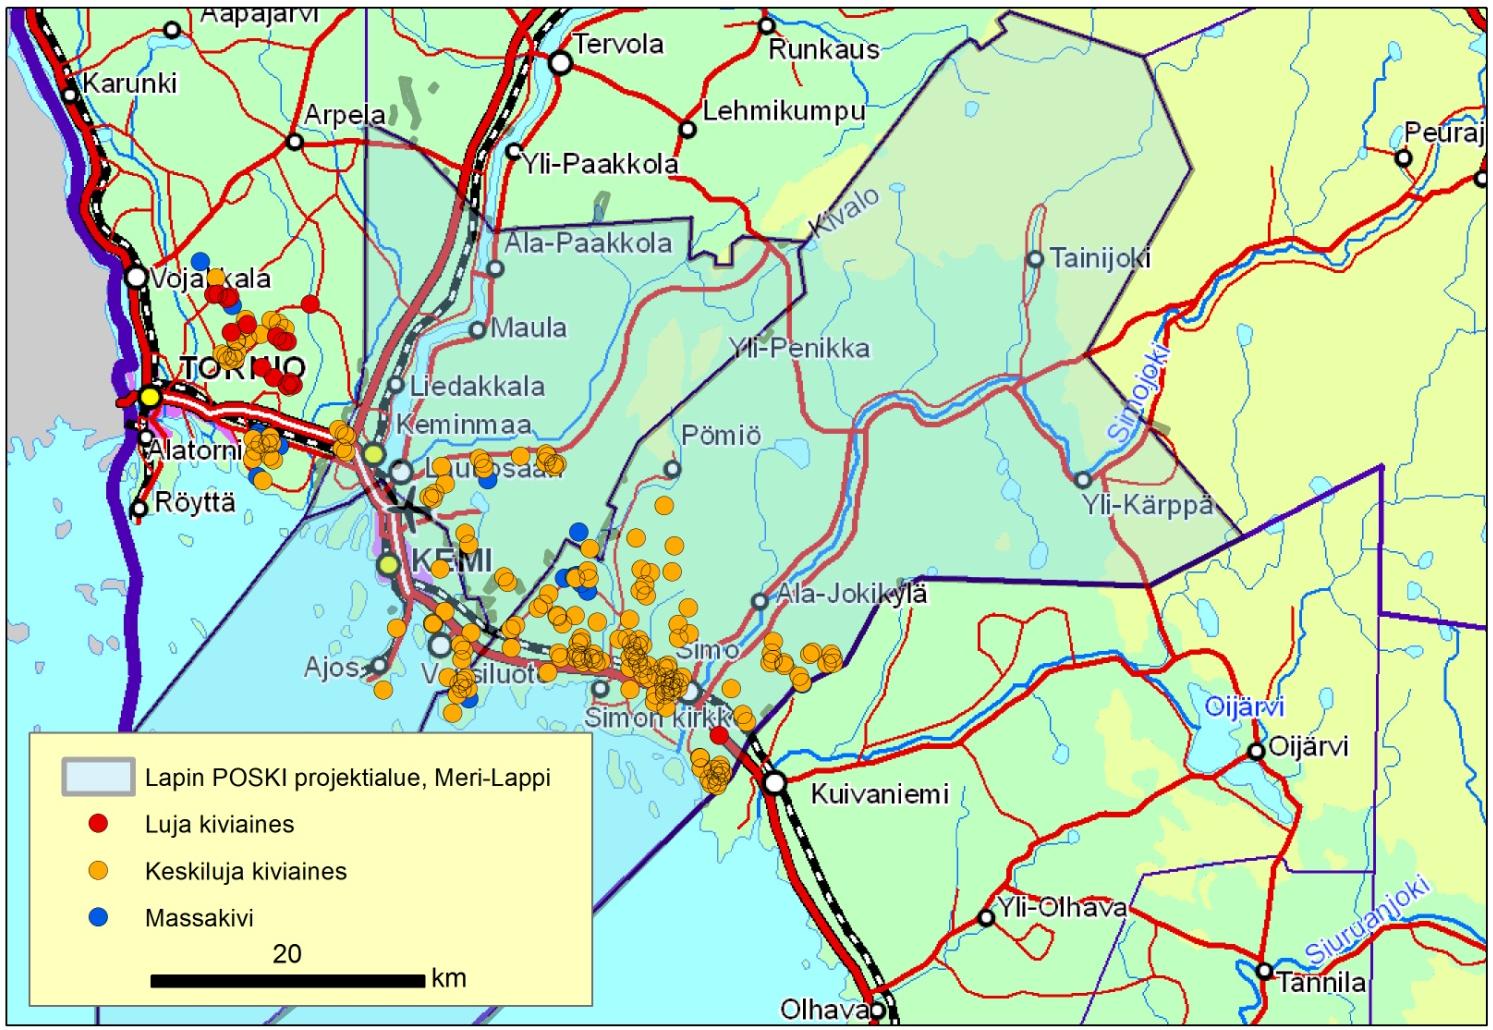 GEOLOGIAN TUTKIMUSKESKUS Raportti 12/2015 12 Keminmaan keski- ja pohjoisosassa on laaja liuskealue, joka koostuu kvartsiiteista, fylliiteistä, vulkaniiteista ja dolomiiteista.